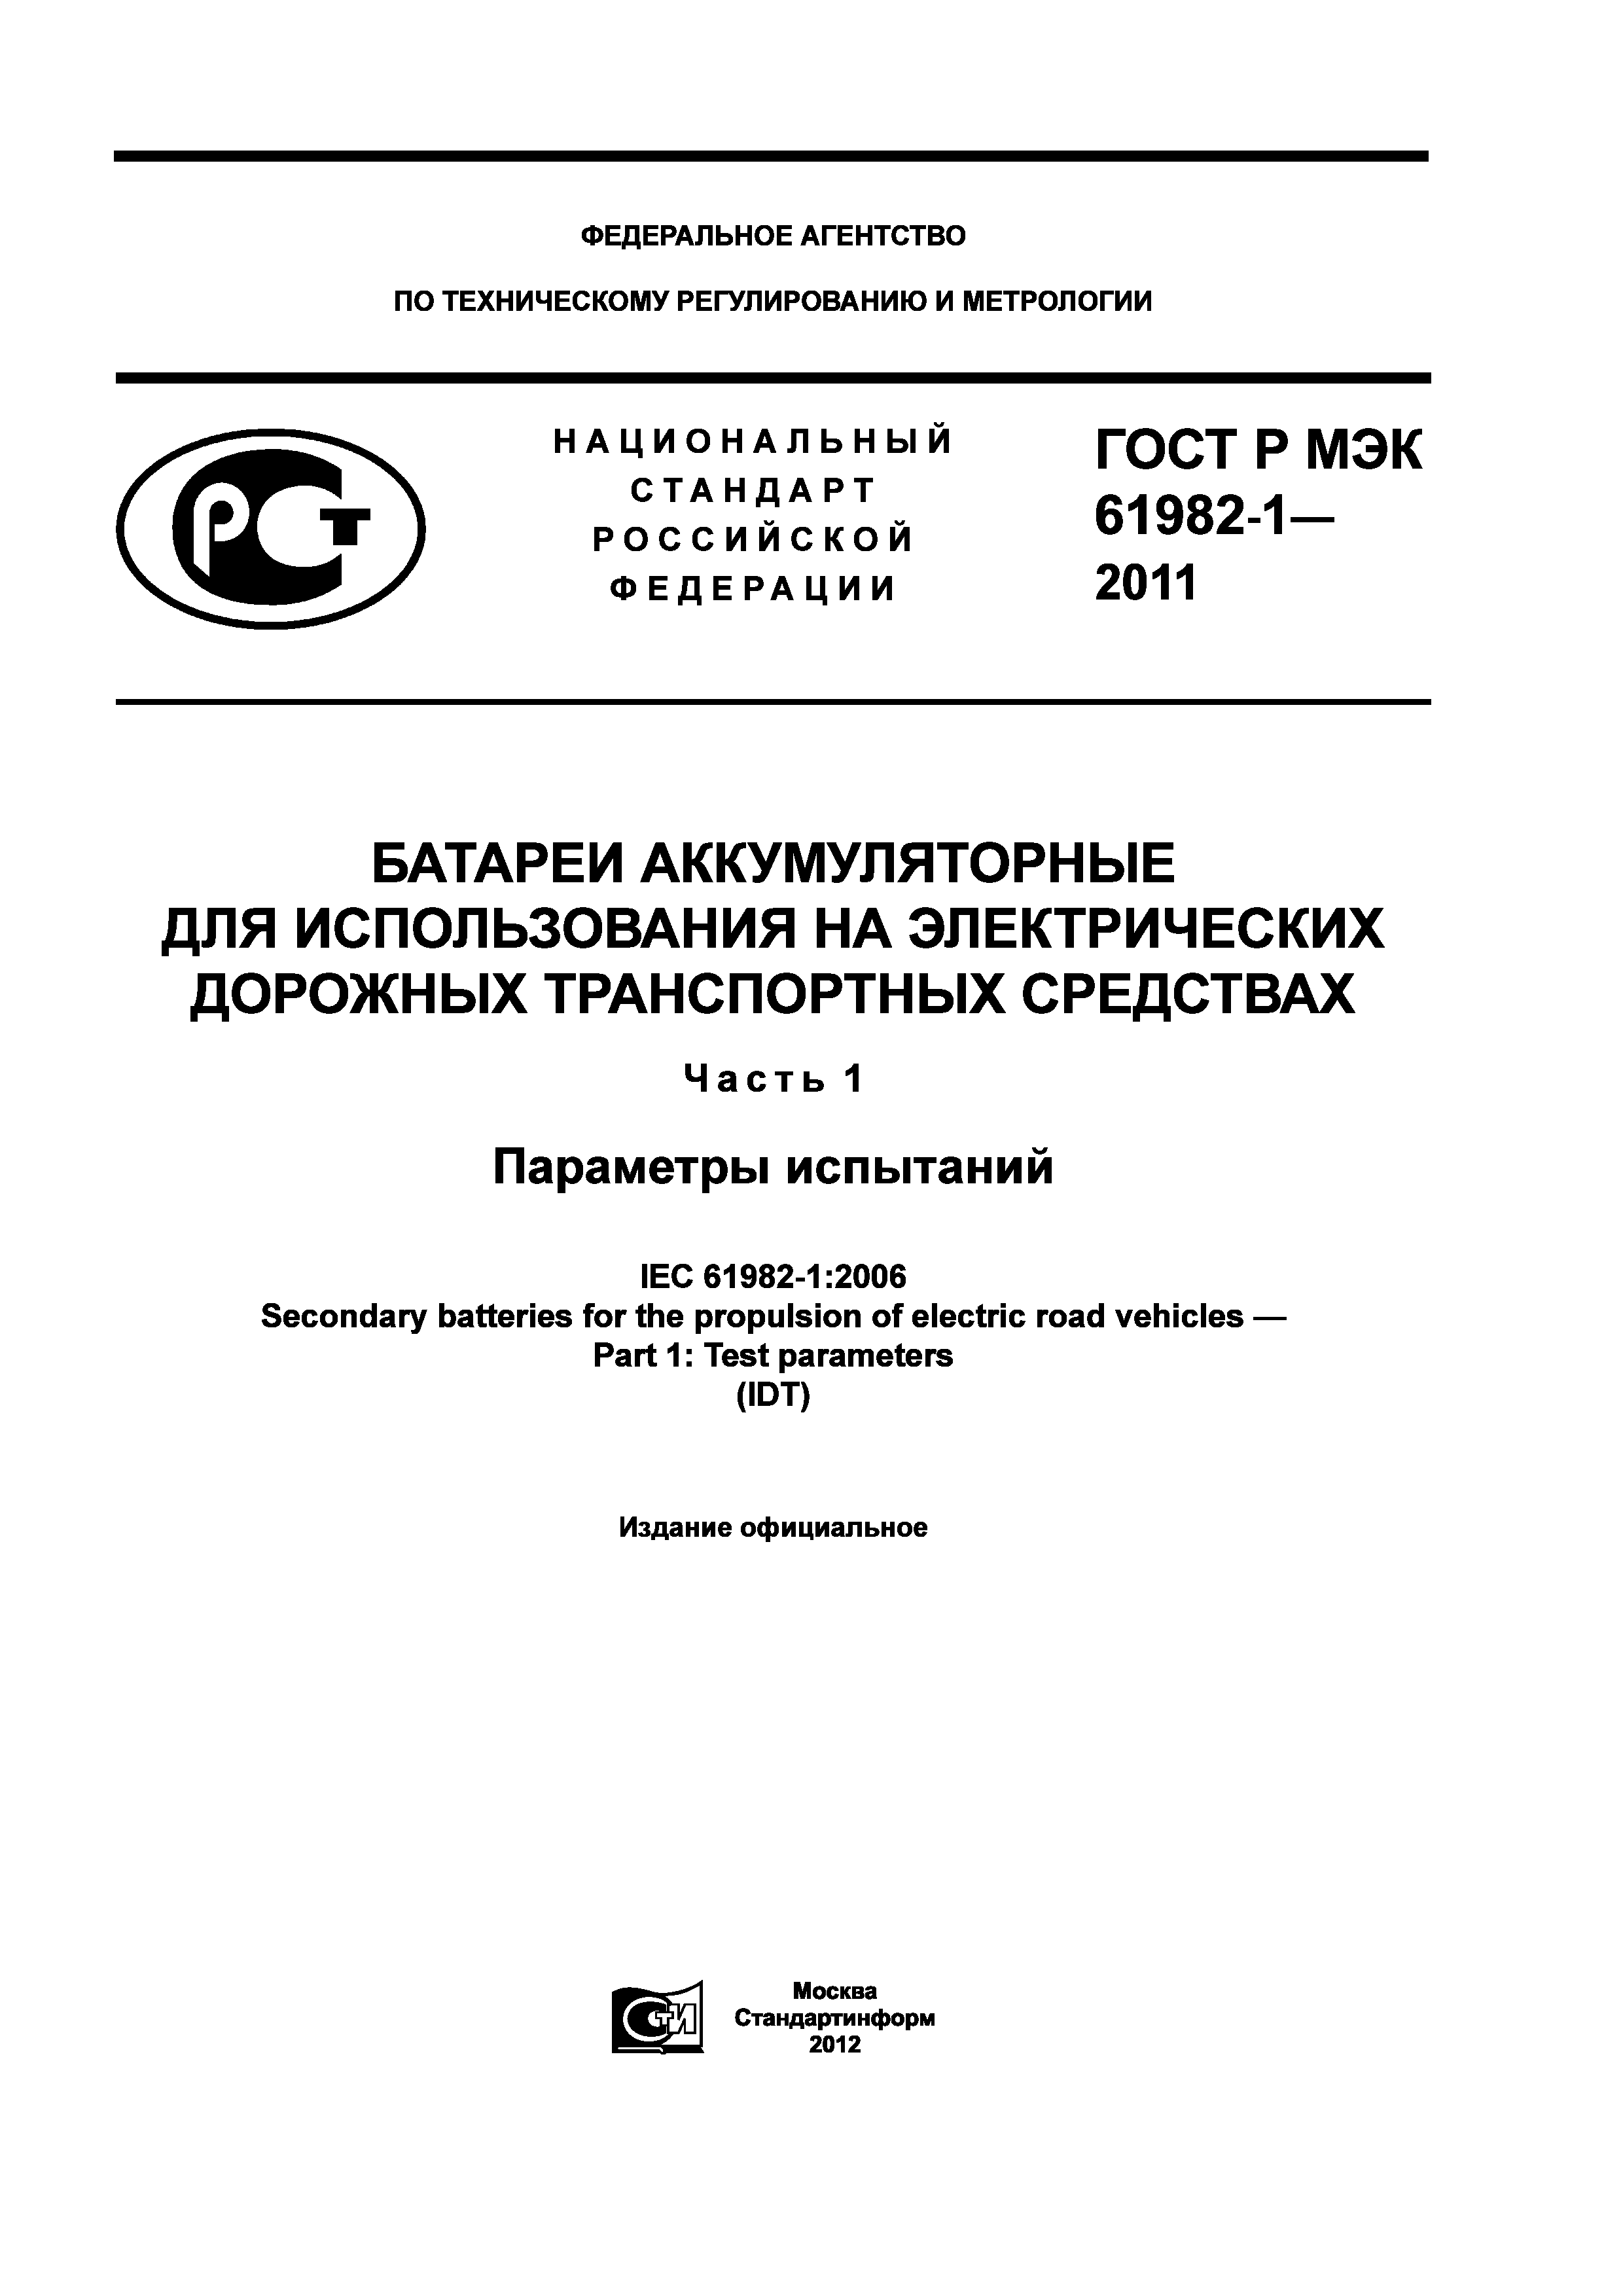 ГОСТ Р МЭК 61982-1-2011